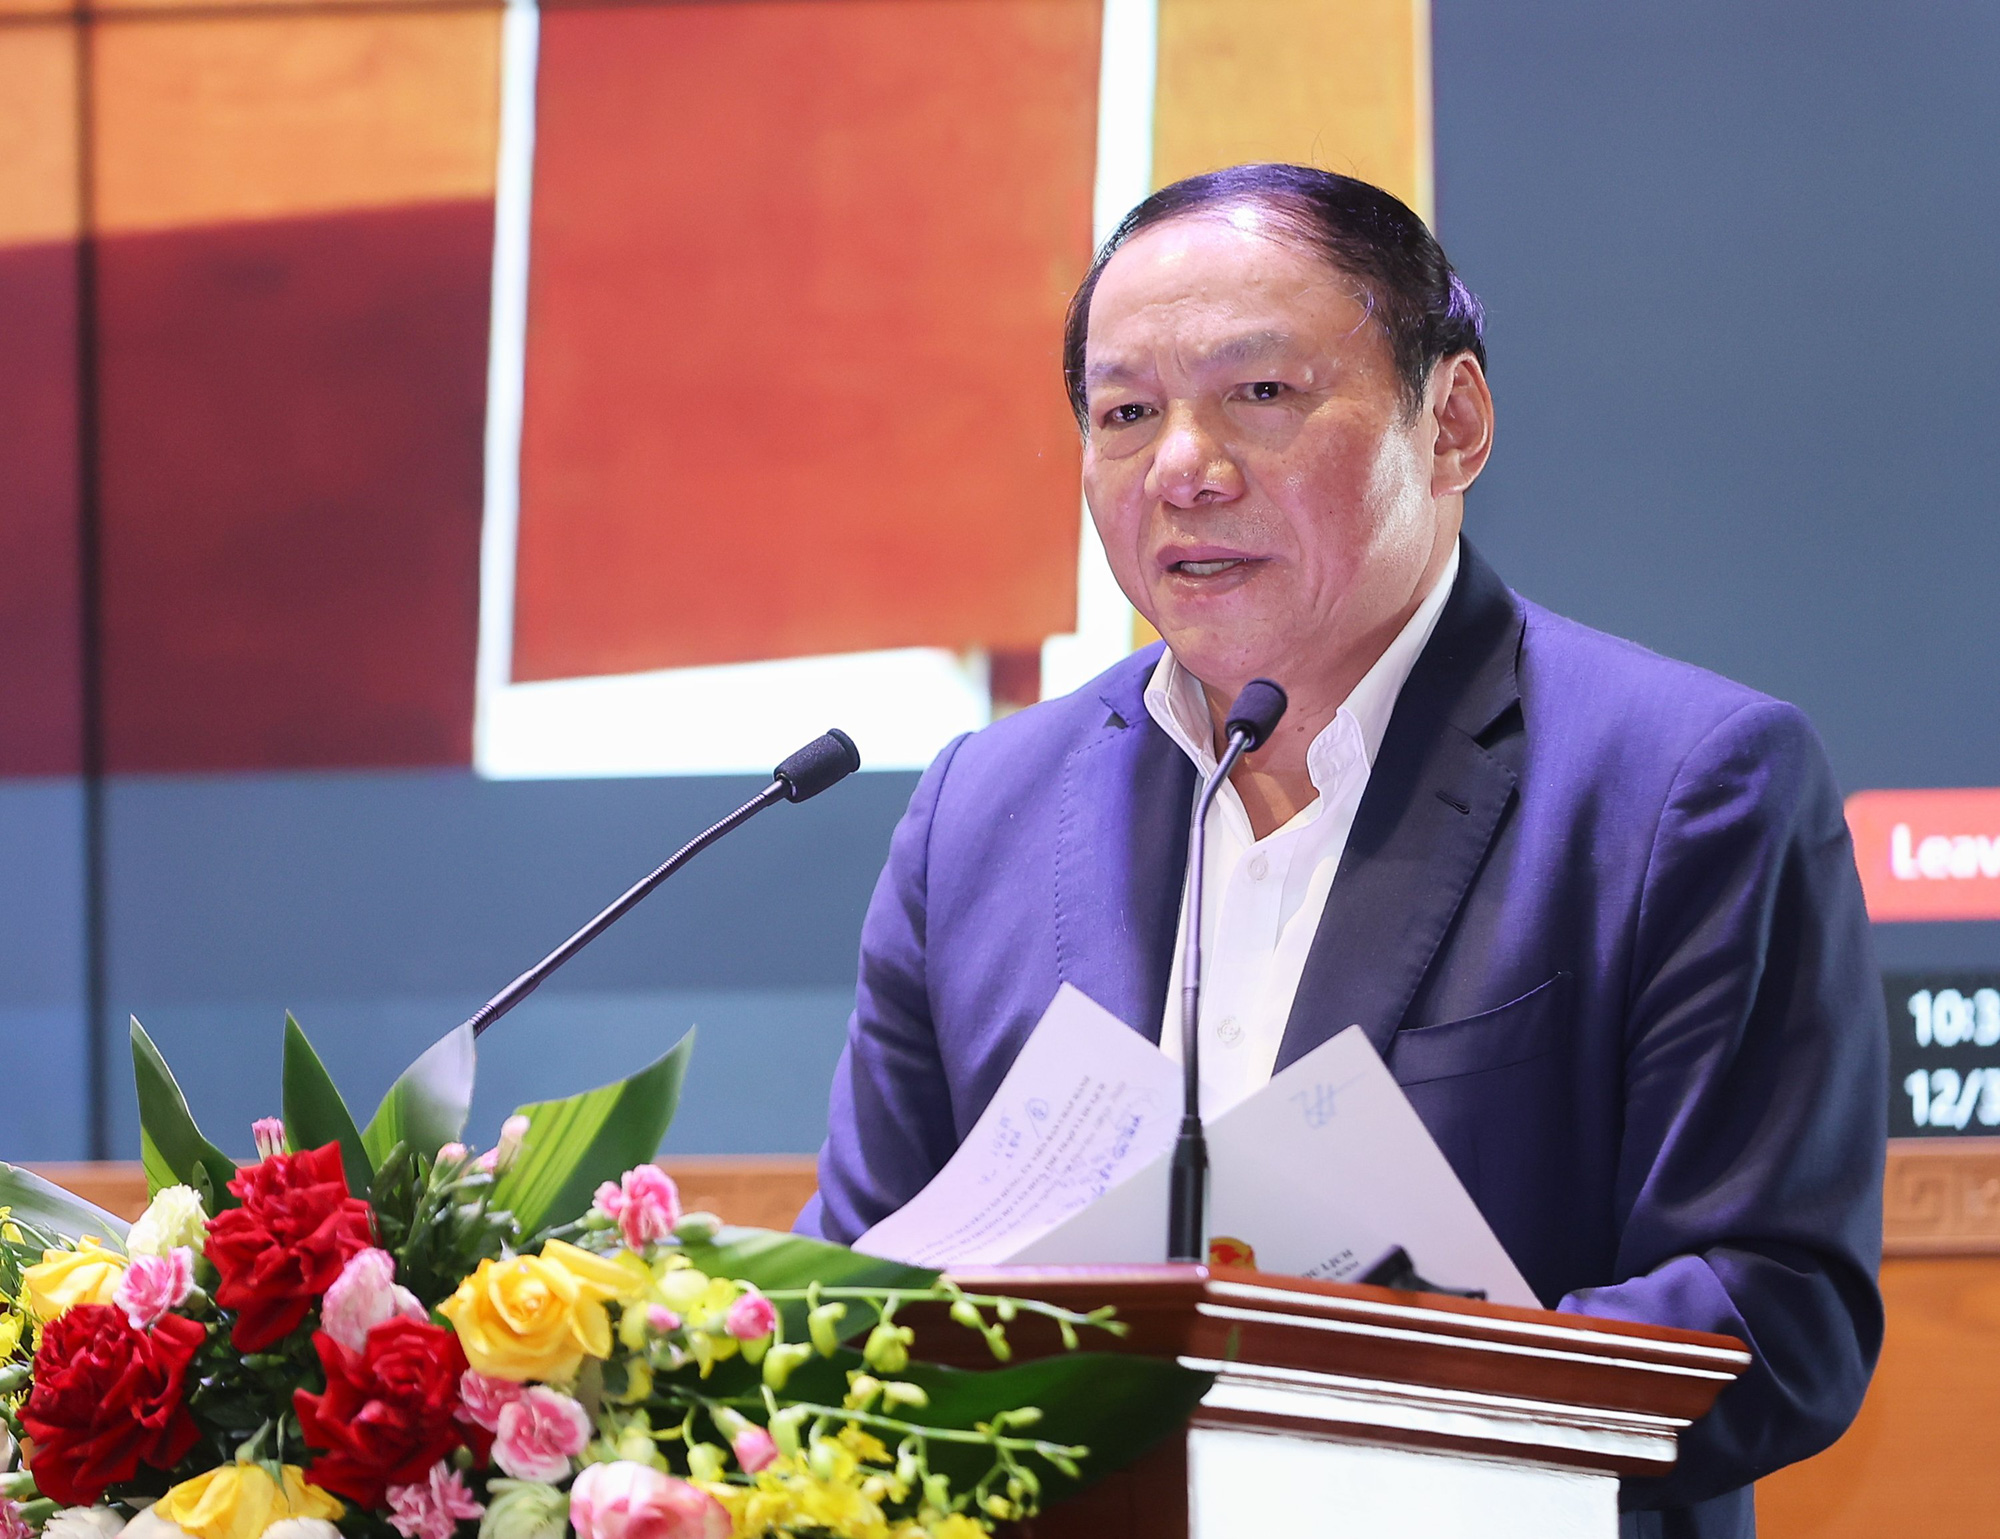 Bộ trưởng Nguyễn Văn Hùng: Cần cụ thể  hóa quan điểm của Đảng để đưa khoa học vào lĩnh vực văn hóa, thể thao, du lịch - Ảnh 1.